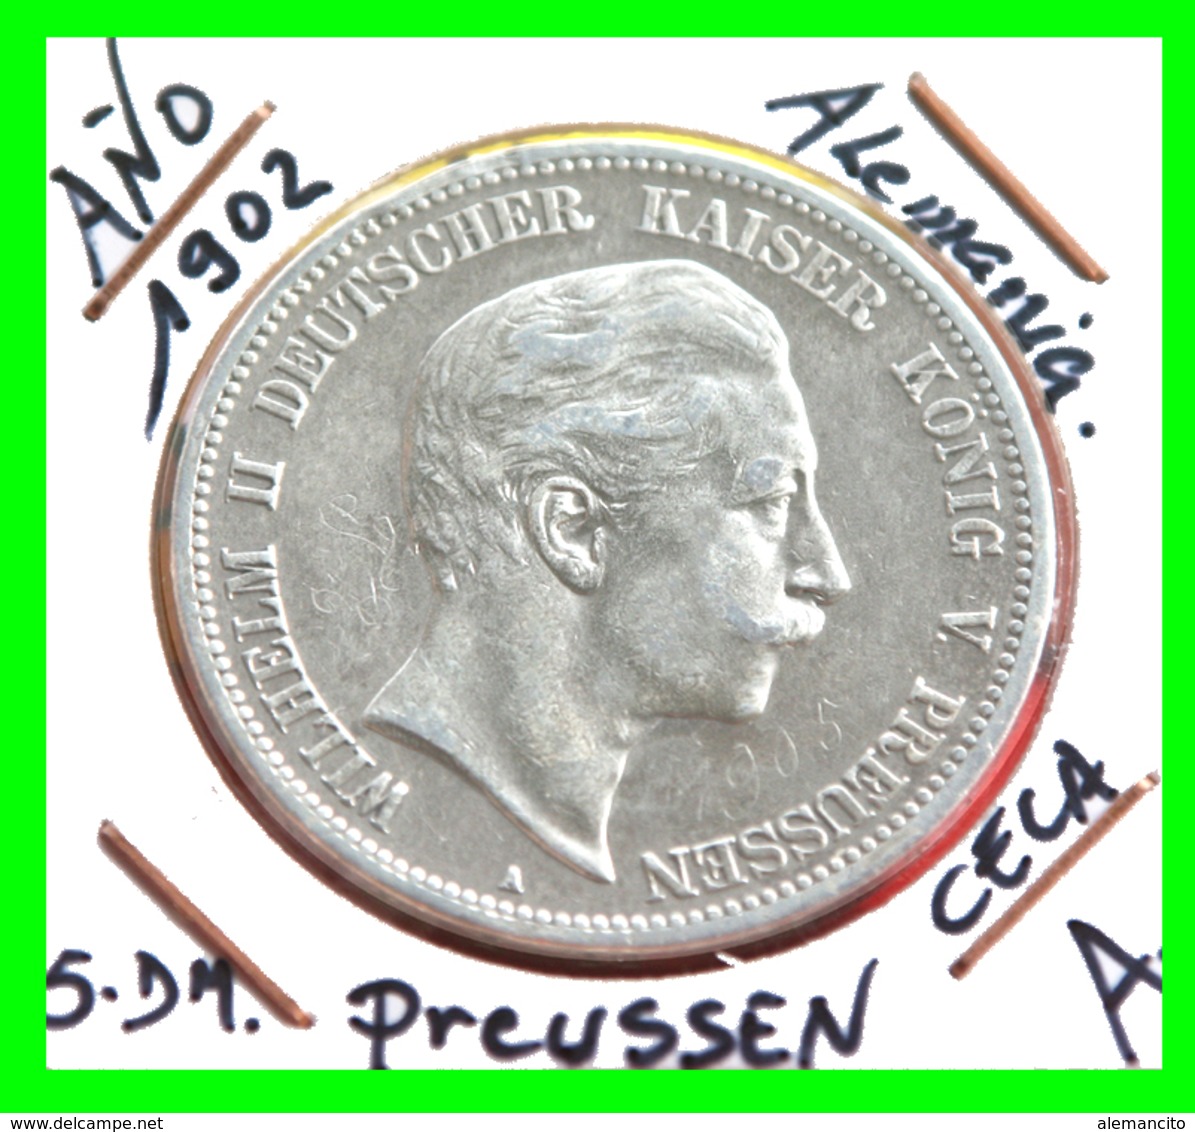 PREUSSEN - WILHELM II DEUTSCHER KAISERKÖNIG VON PREUSSEN 5 DM AÑO 1913 – CECA-A - 2, 3 & 5 Mark Argent